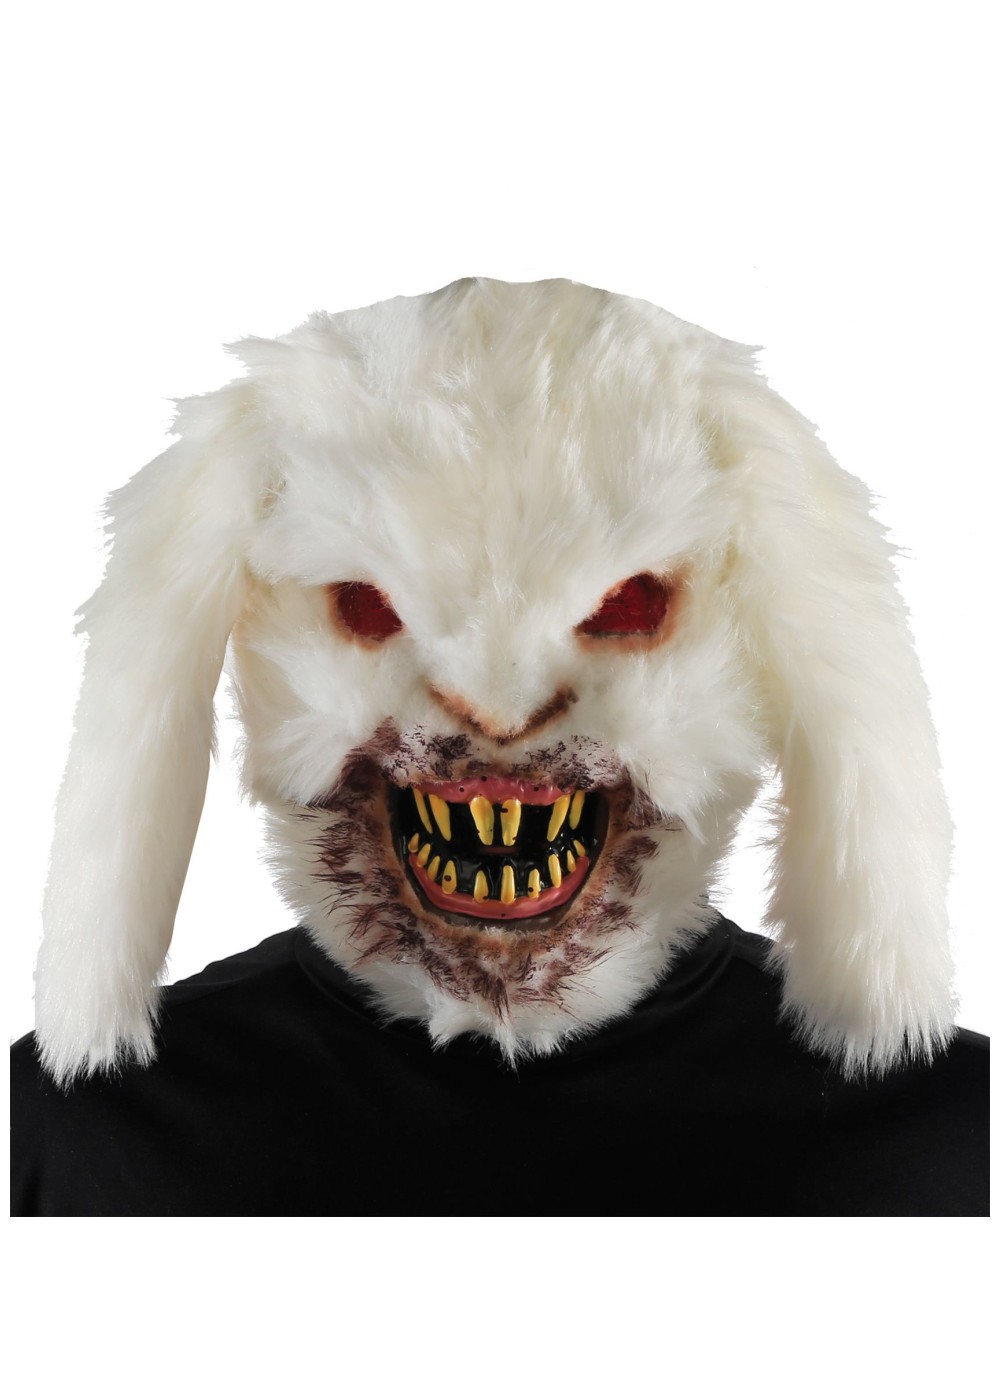 Rabid Bunny Mask